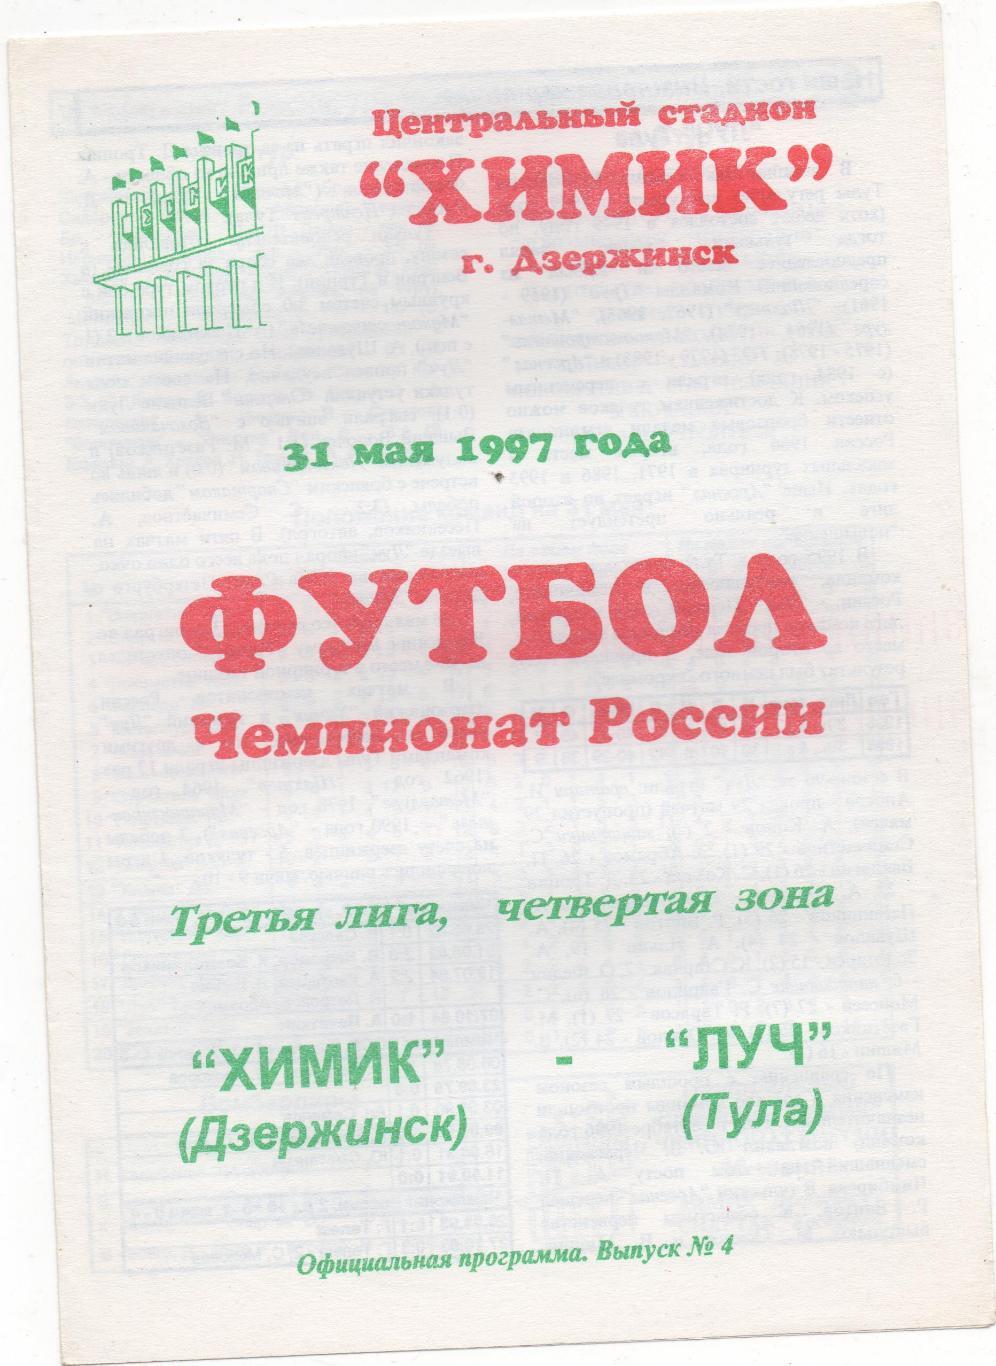 Химик (Дзержинск) - Луч (Тула) - 1997. 1й вид